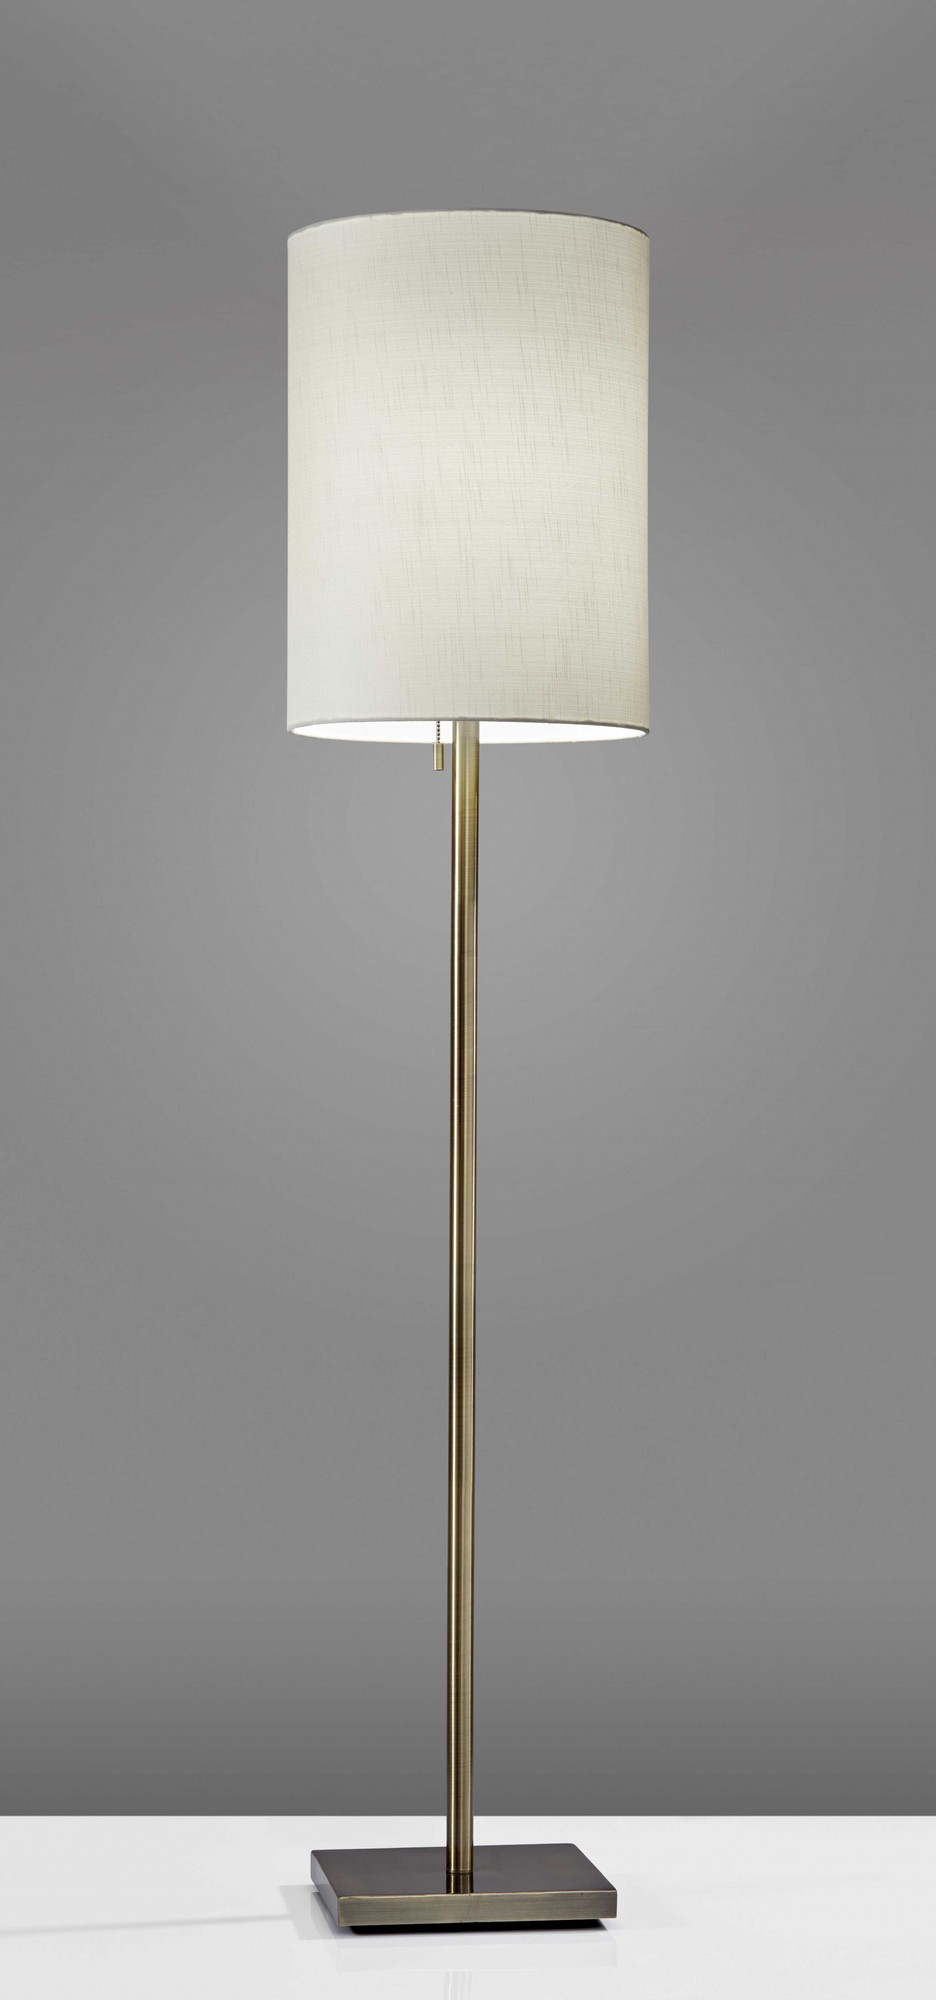 13" X 13" X 60.5" Brass Metal Floor Lamp